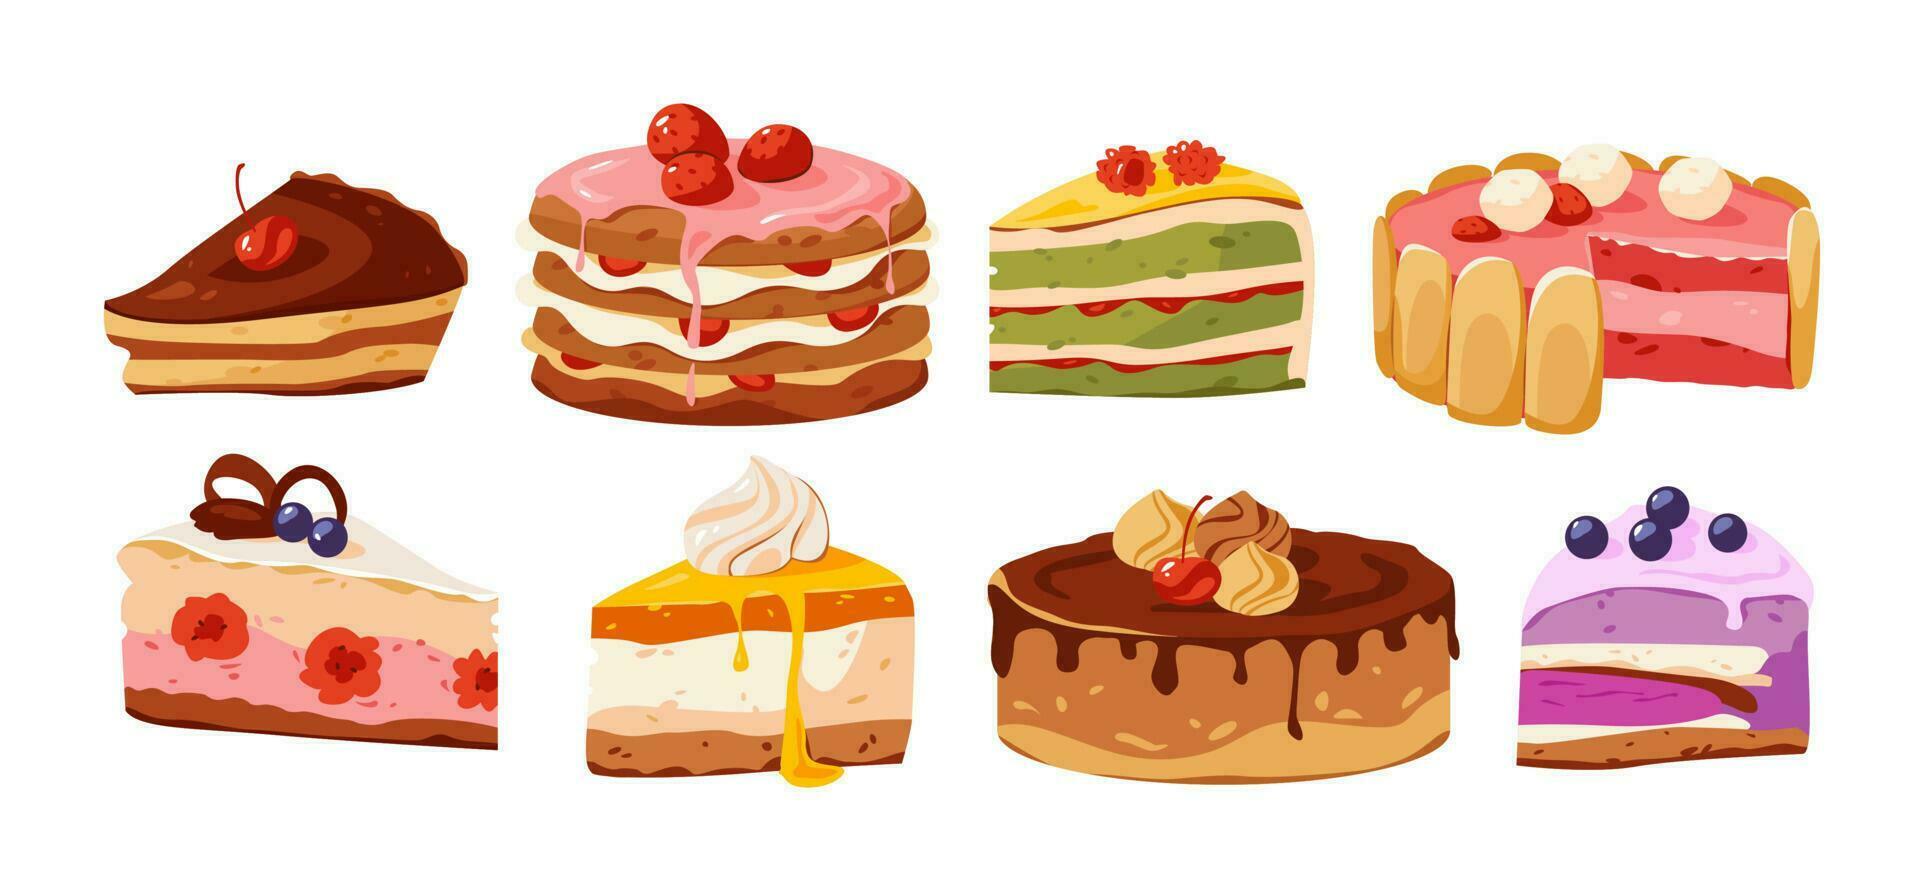 heerlijk cakes en gebakjes set. stukken van taart met verschillend vullingen. smakelijk verjaardag voedsel. tekenfilm vector illustratie.